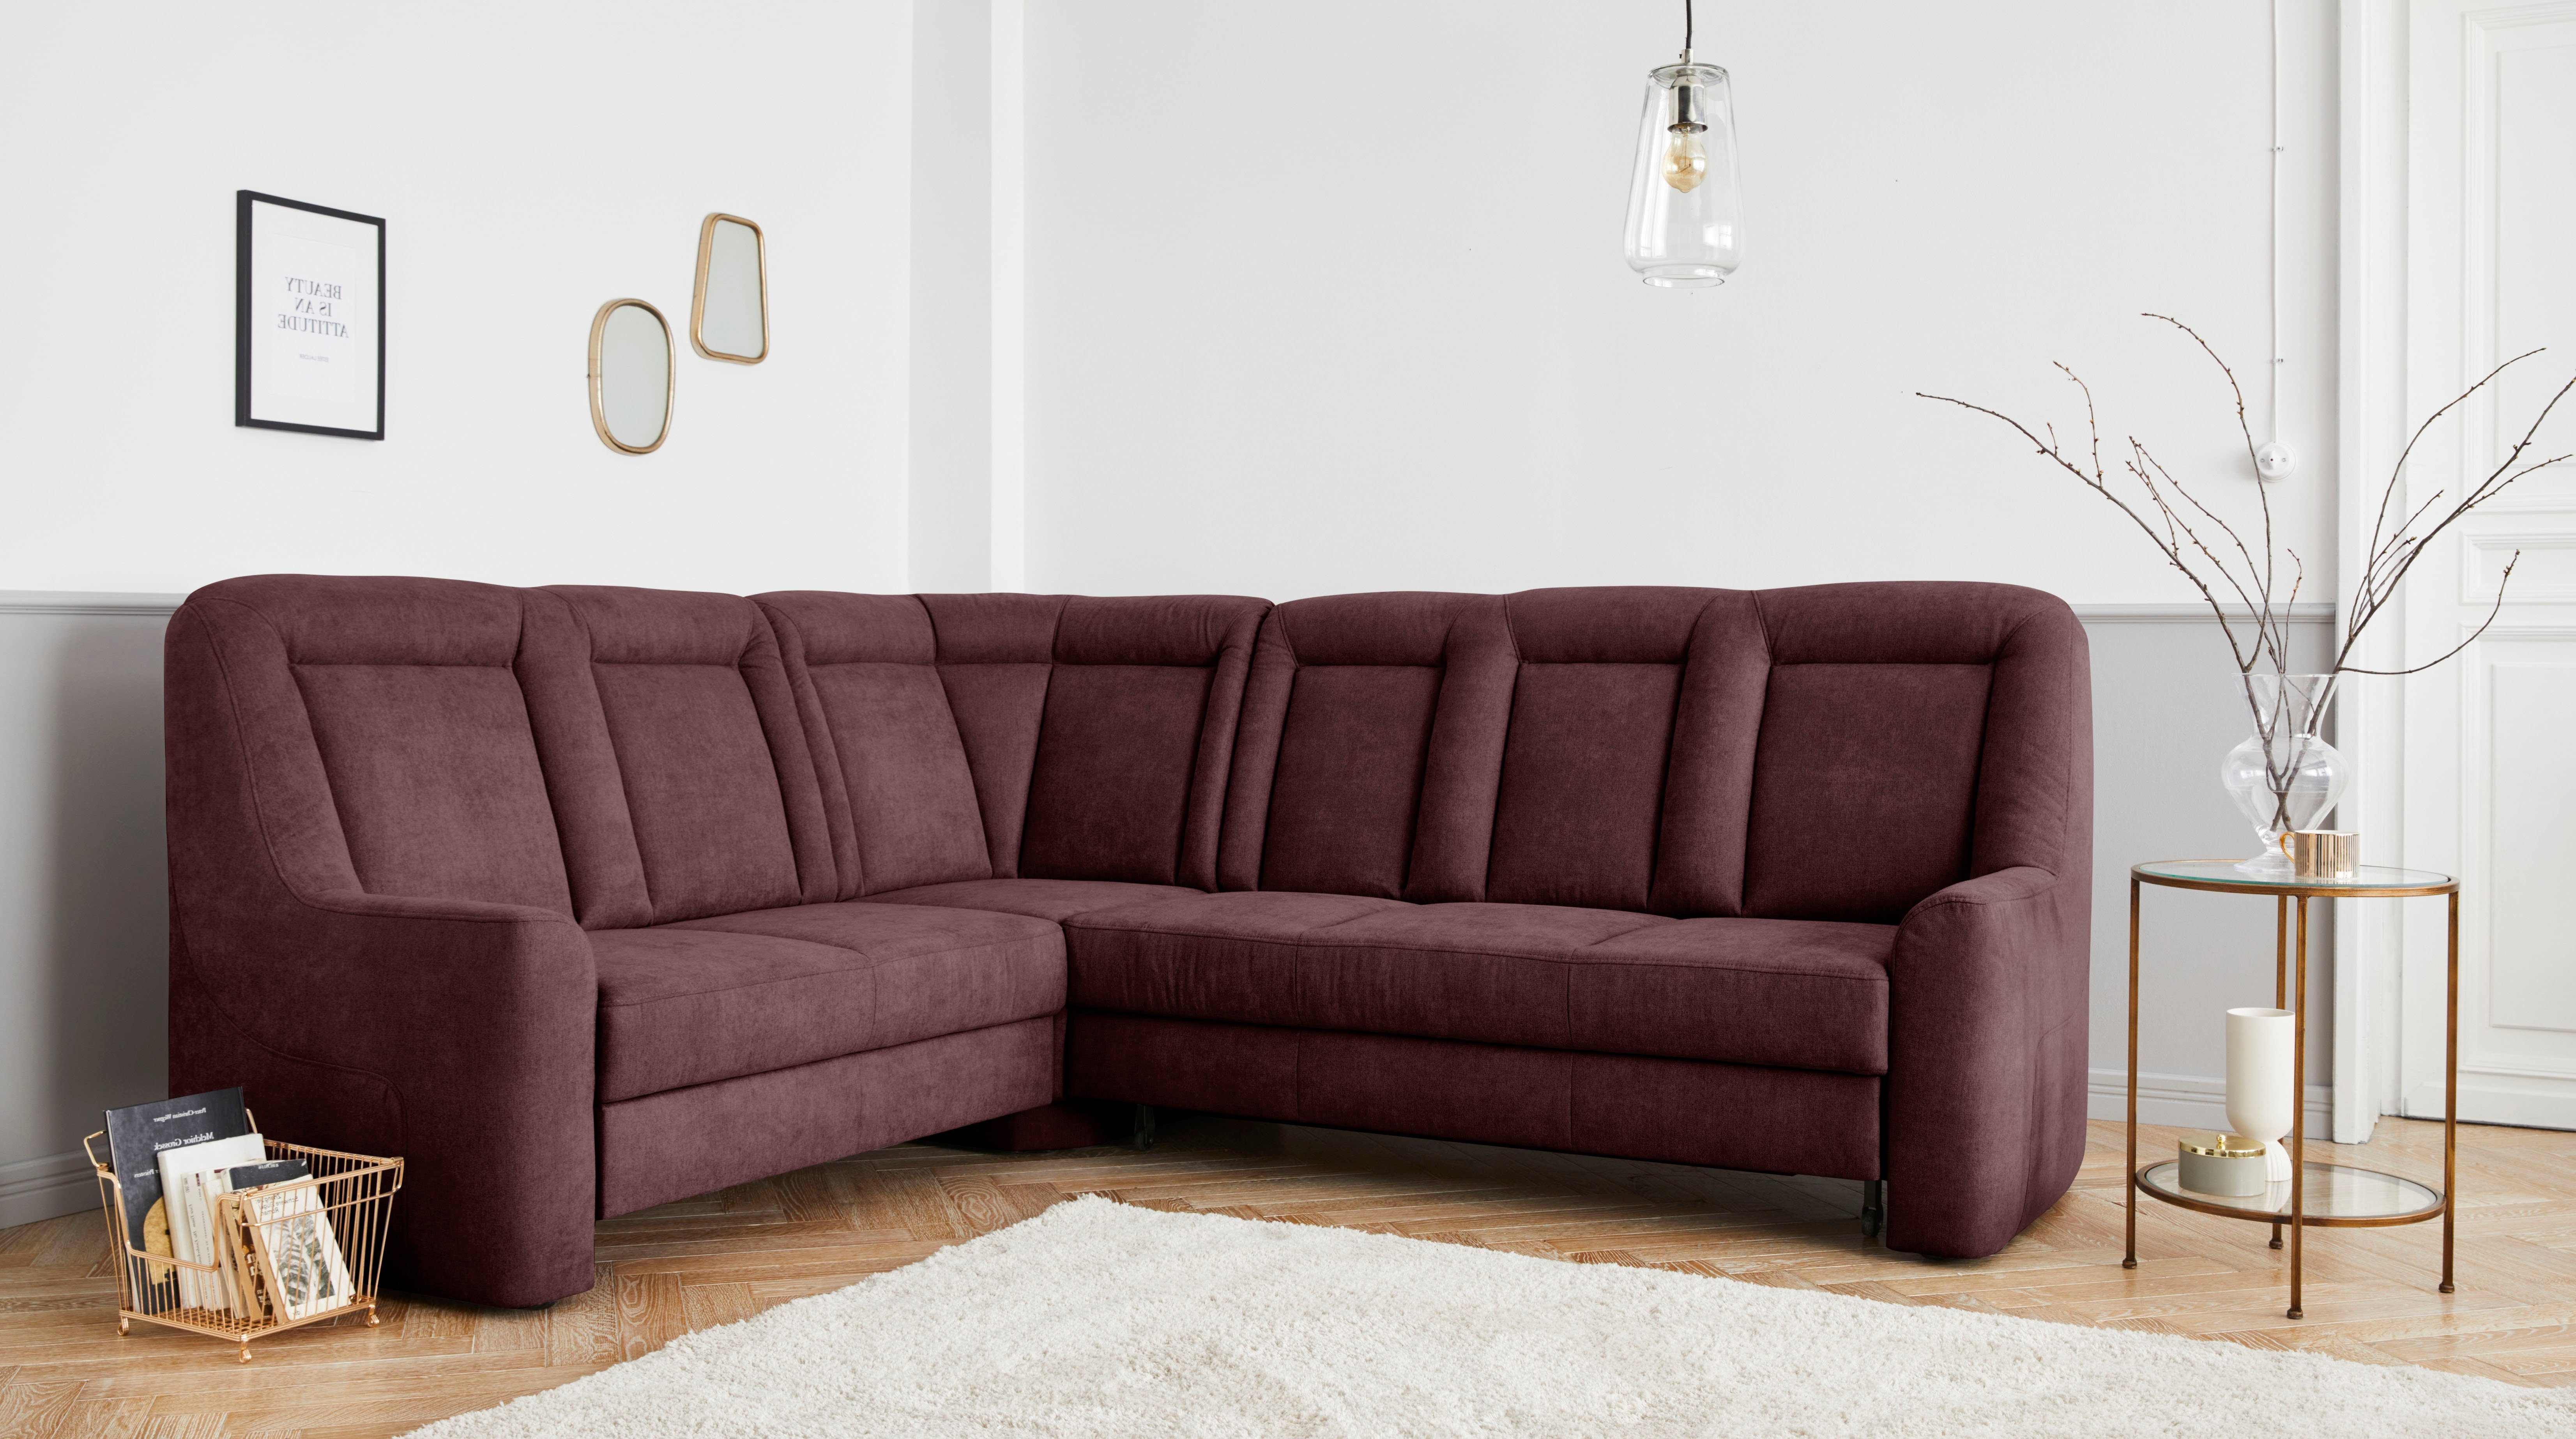 sit&more Hoekbank MELISSA klassieke meubelcollectie, naar keuze met slaapfunctie en lade, optioneel in "soft clean" uitvoering